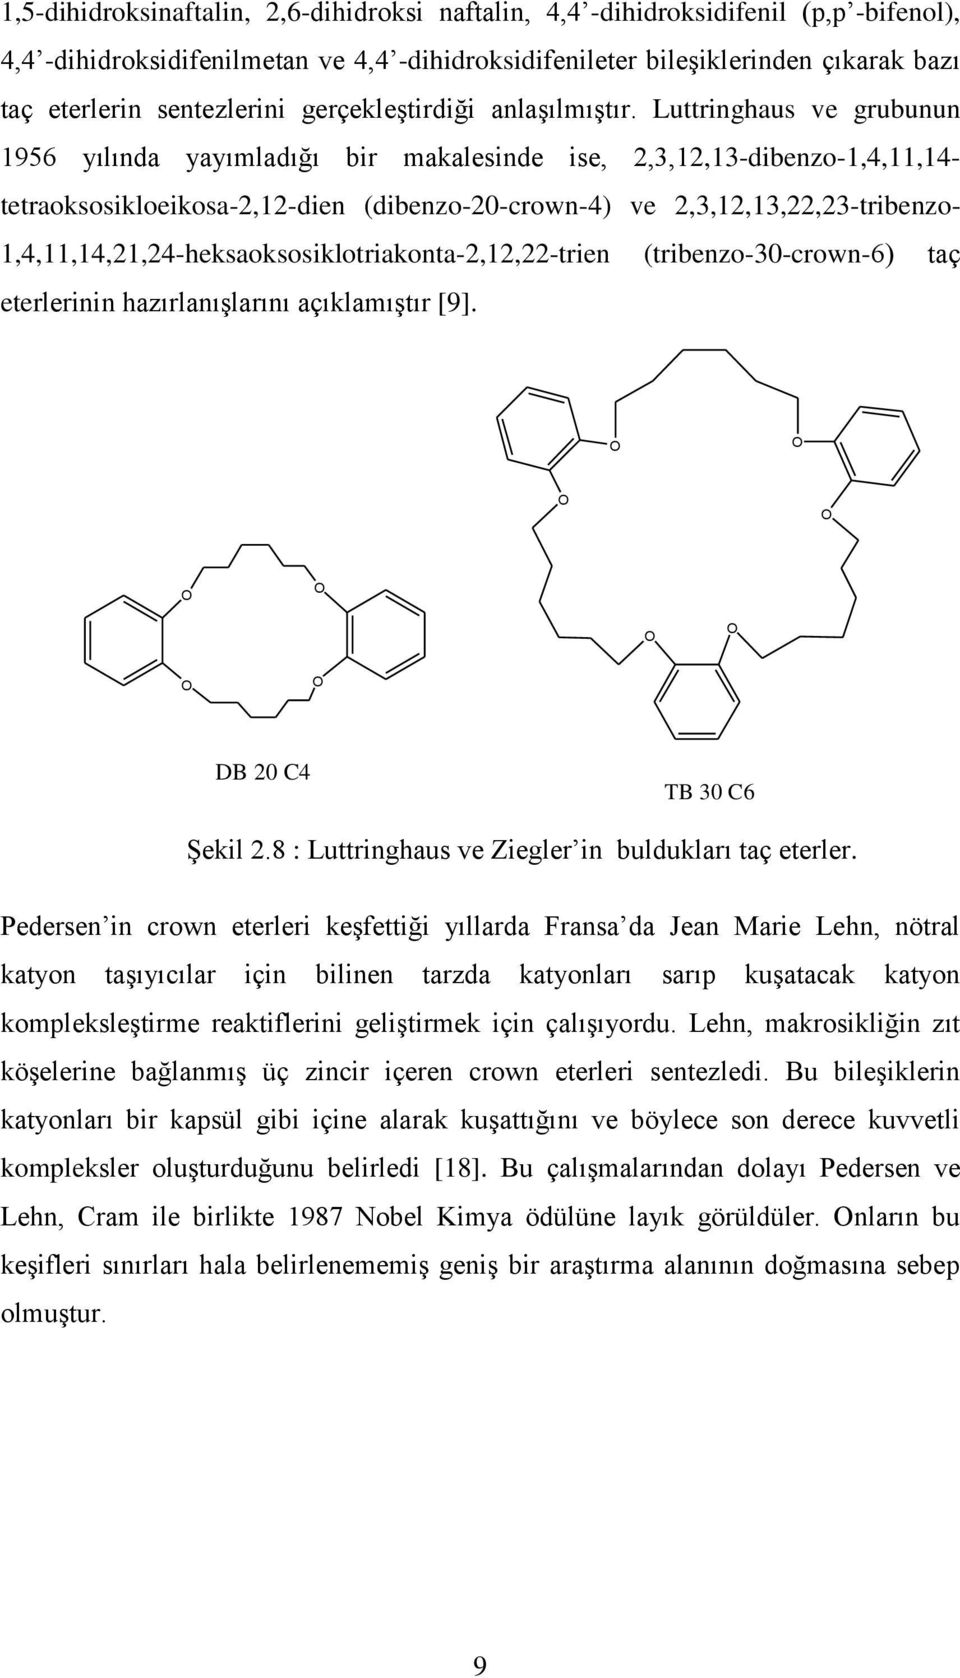 Luttringhaus ve grubunun 1956 yılında yayımladığı bir makalesinde ise, 2,3,12,13-dibenzo-1,4,11,14- tetraoksosikloeikosa-2,12-dien (dibenzo-20-crown-4) ve 2,3,12,13,22,23-tribenzo-